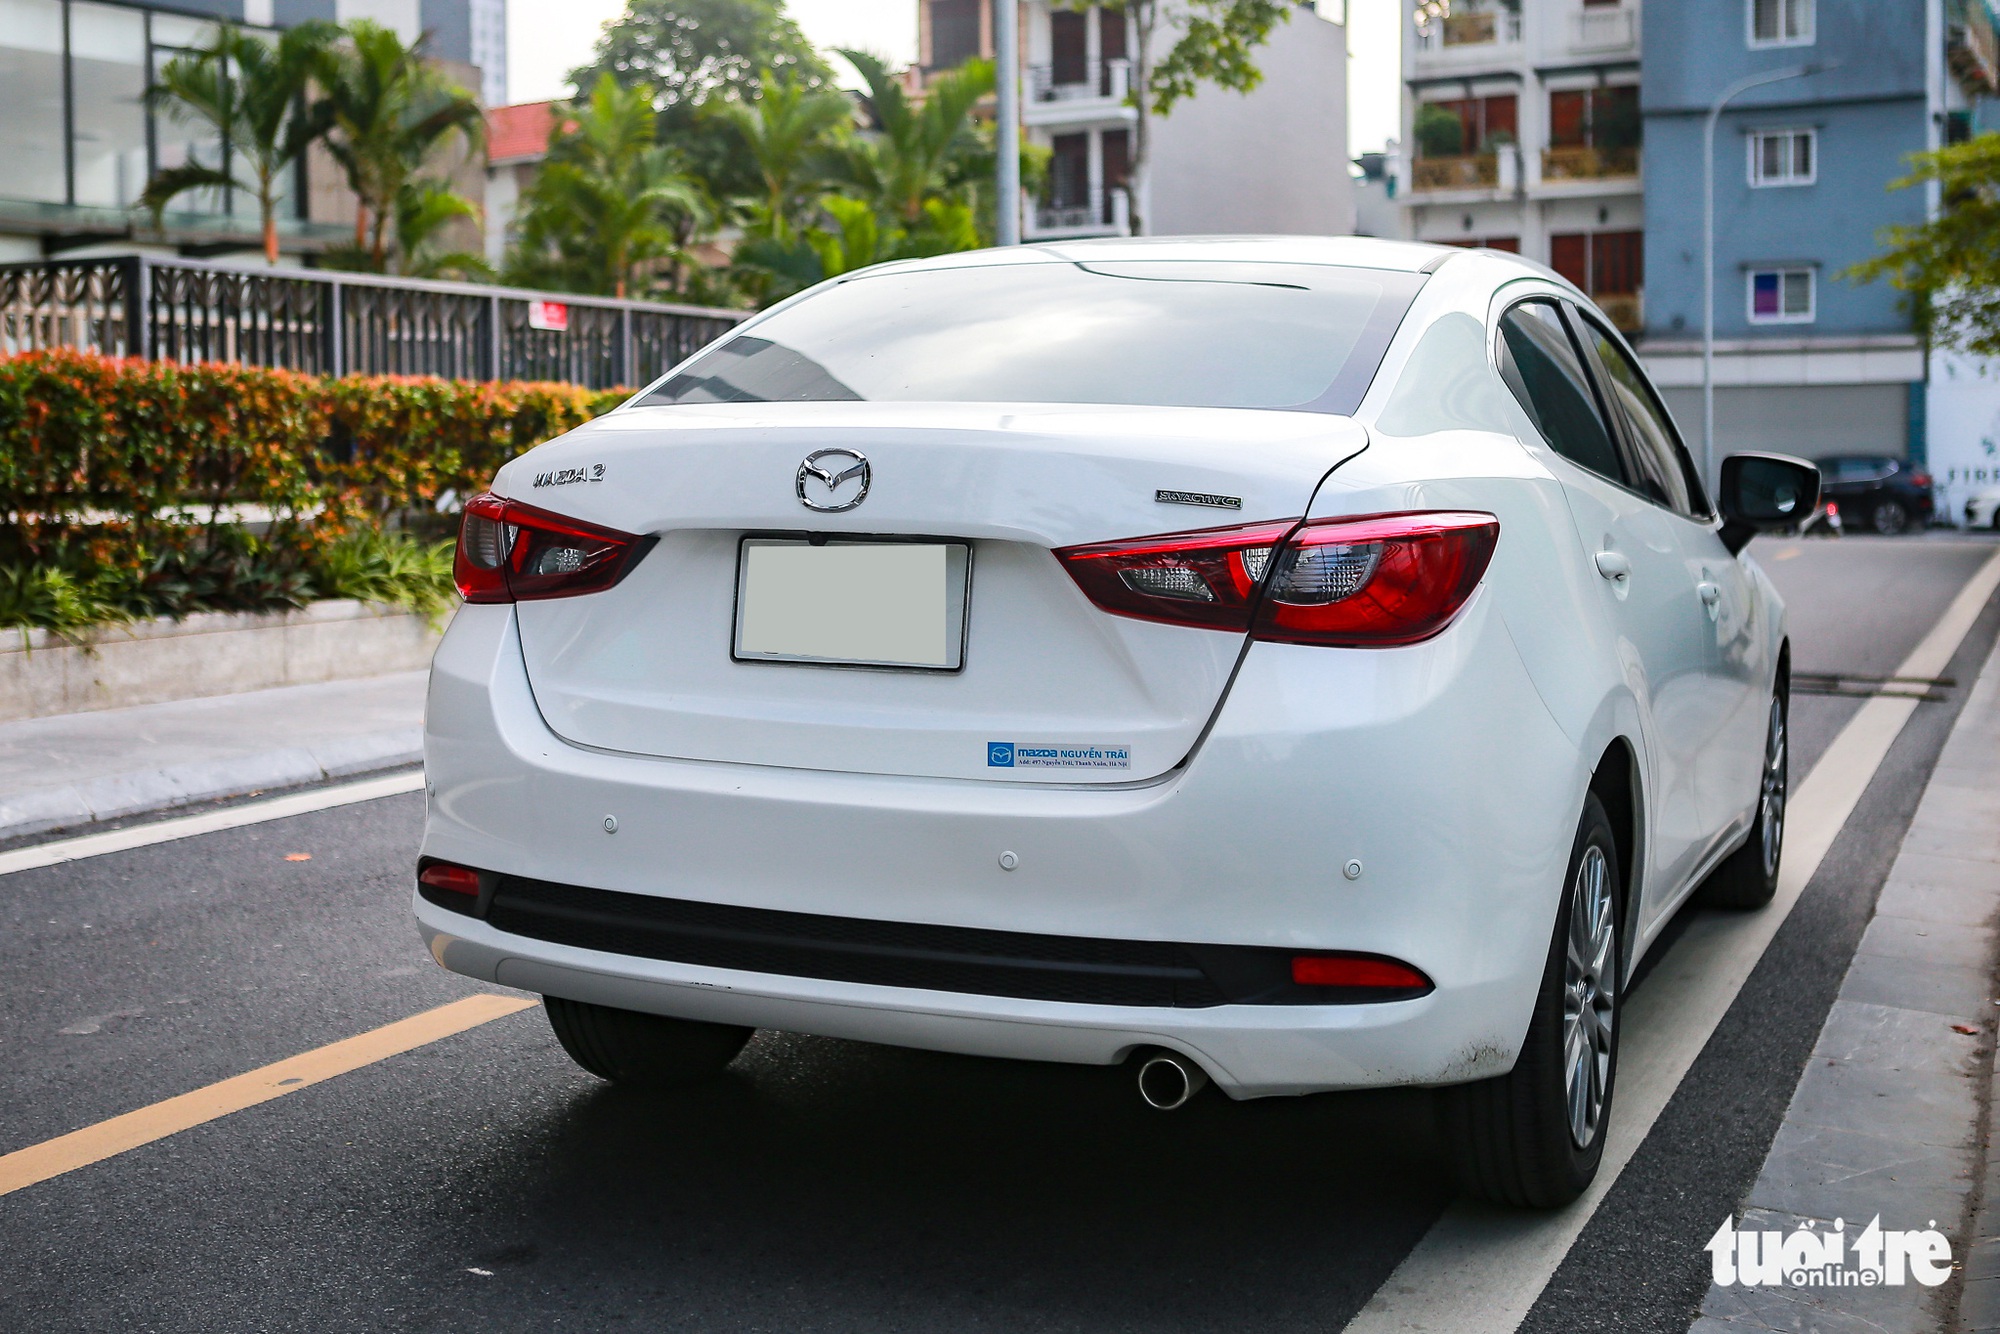 Chủ xe Mazda2: Nhỏ gọn, dễ lái, hợp với chị em khi đi phố - Ảnh 5.